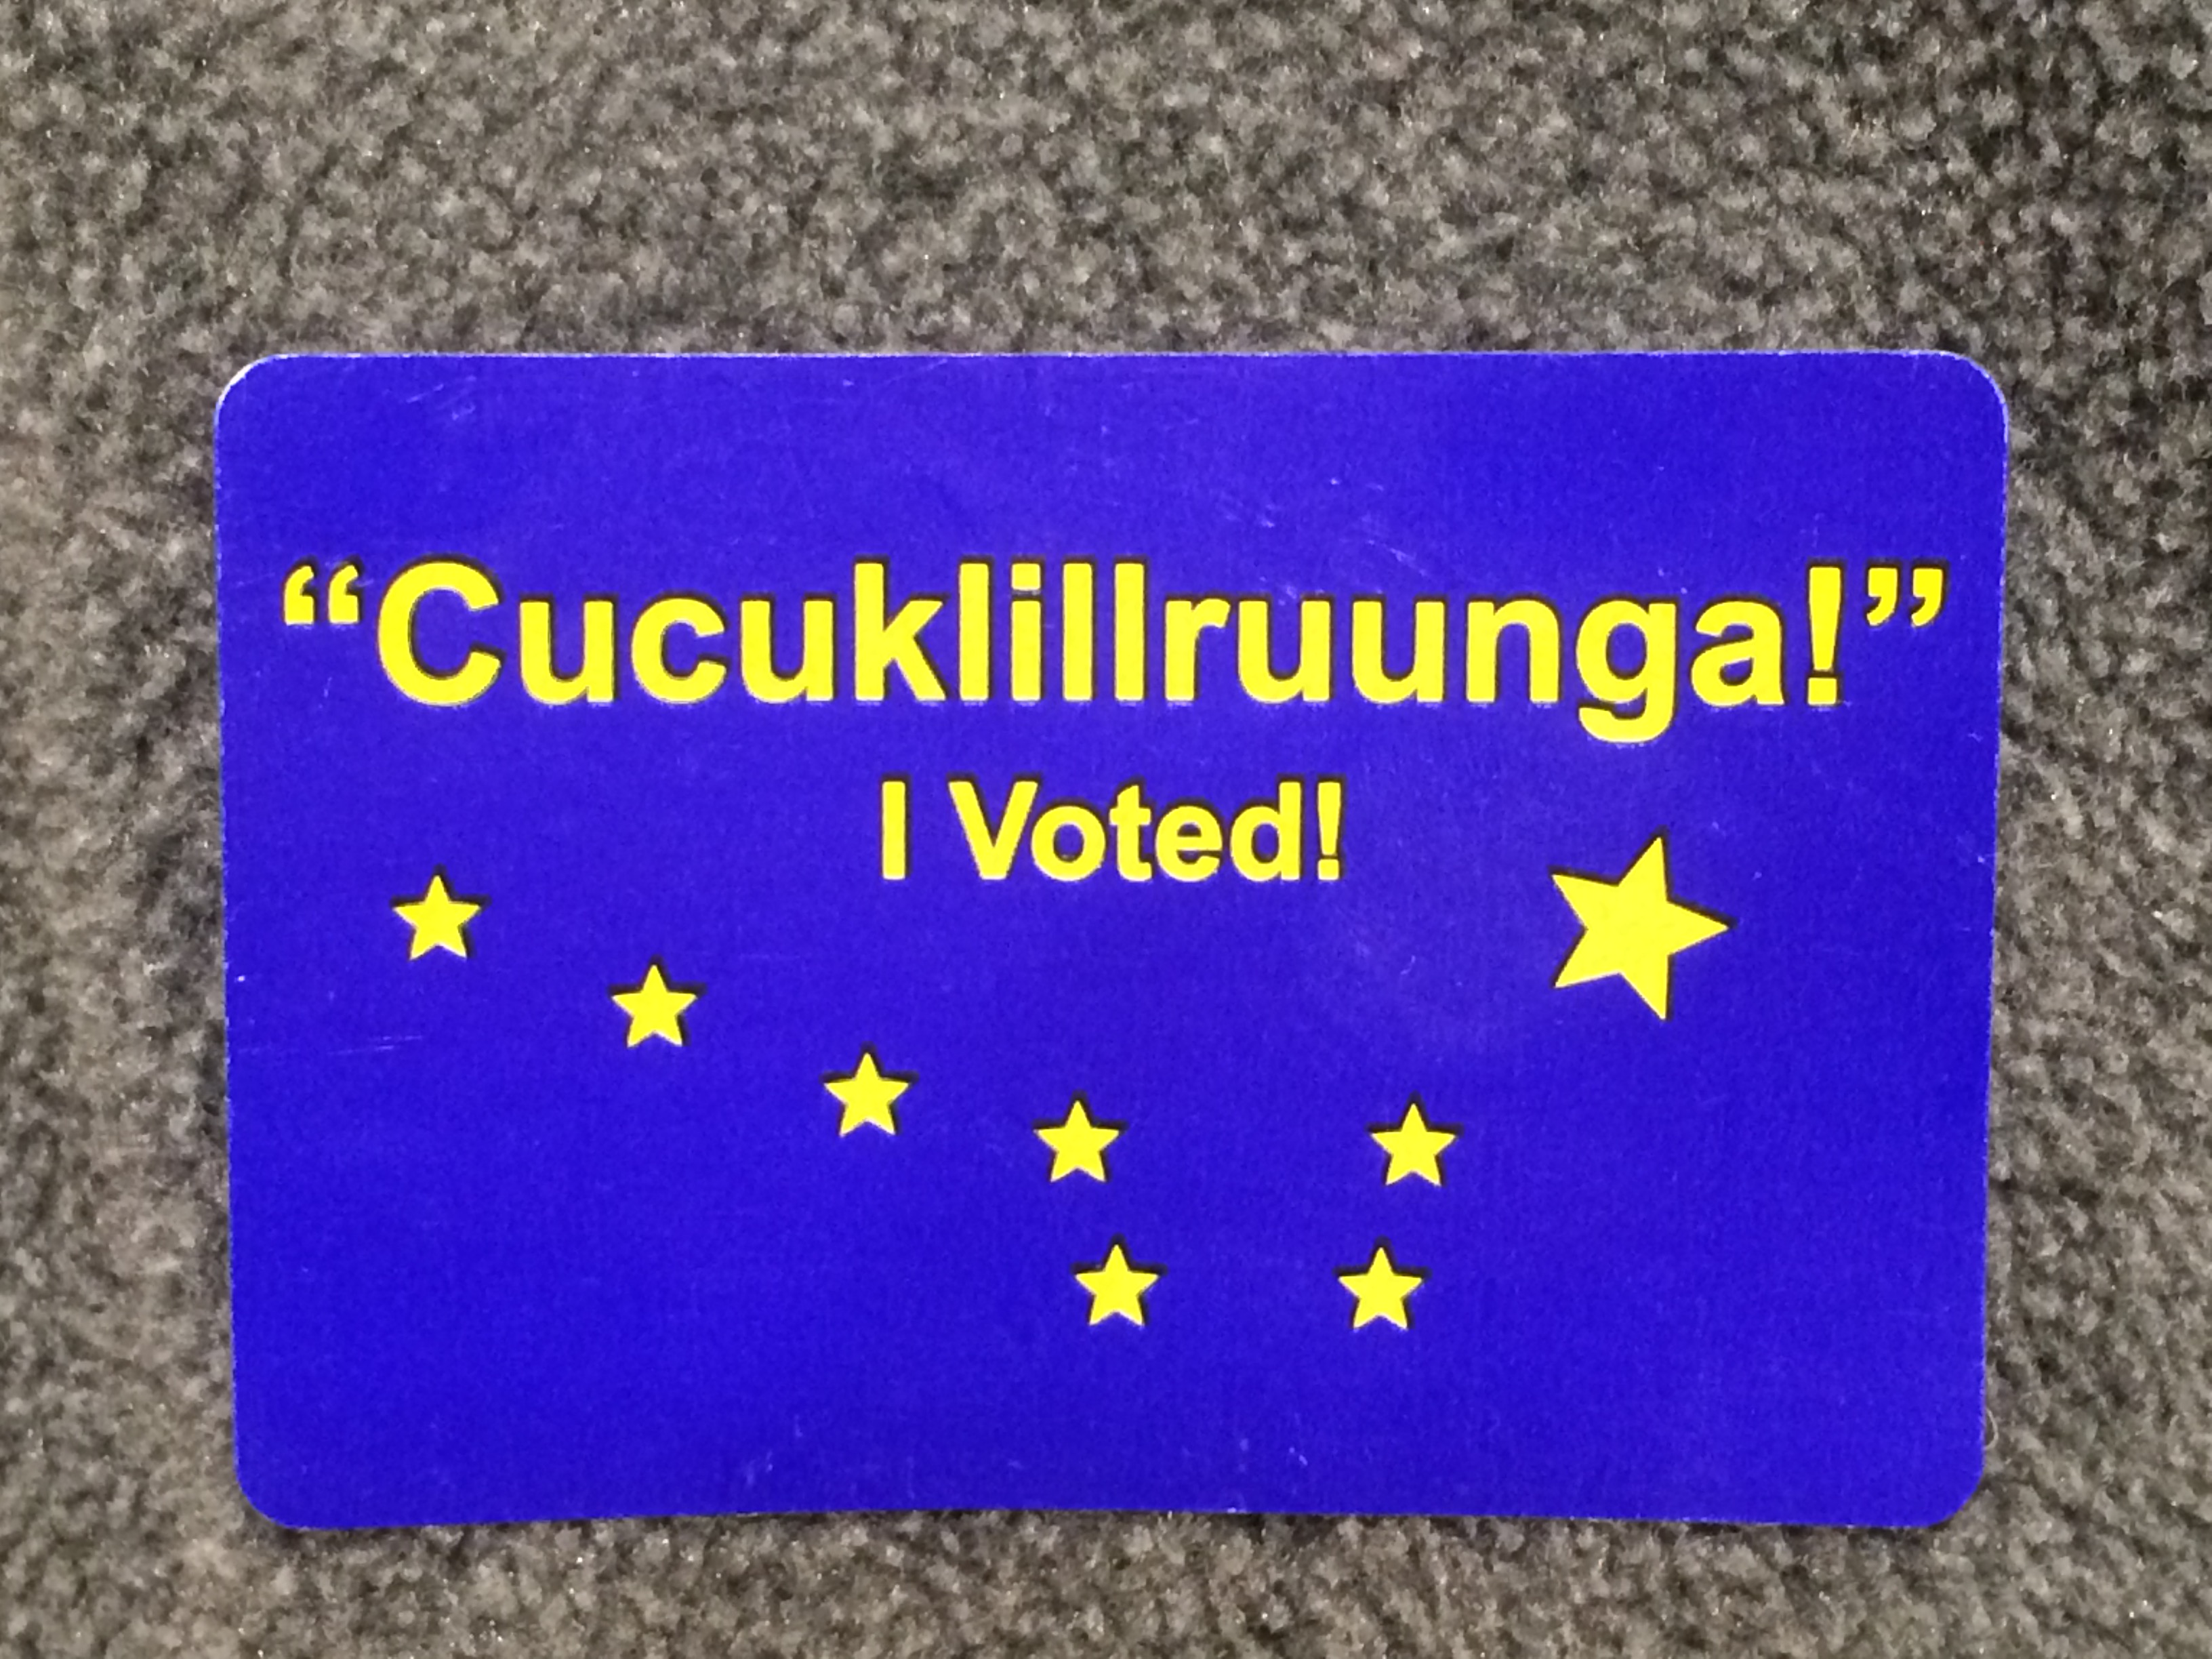 Yup’ik and English ”I Voted” stickers from Bethel’s municipal election. Photo courtesy of Anna Rose MacArthur / KYUK.